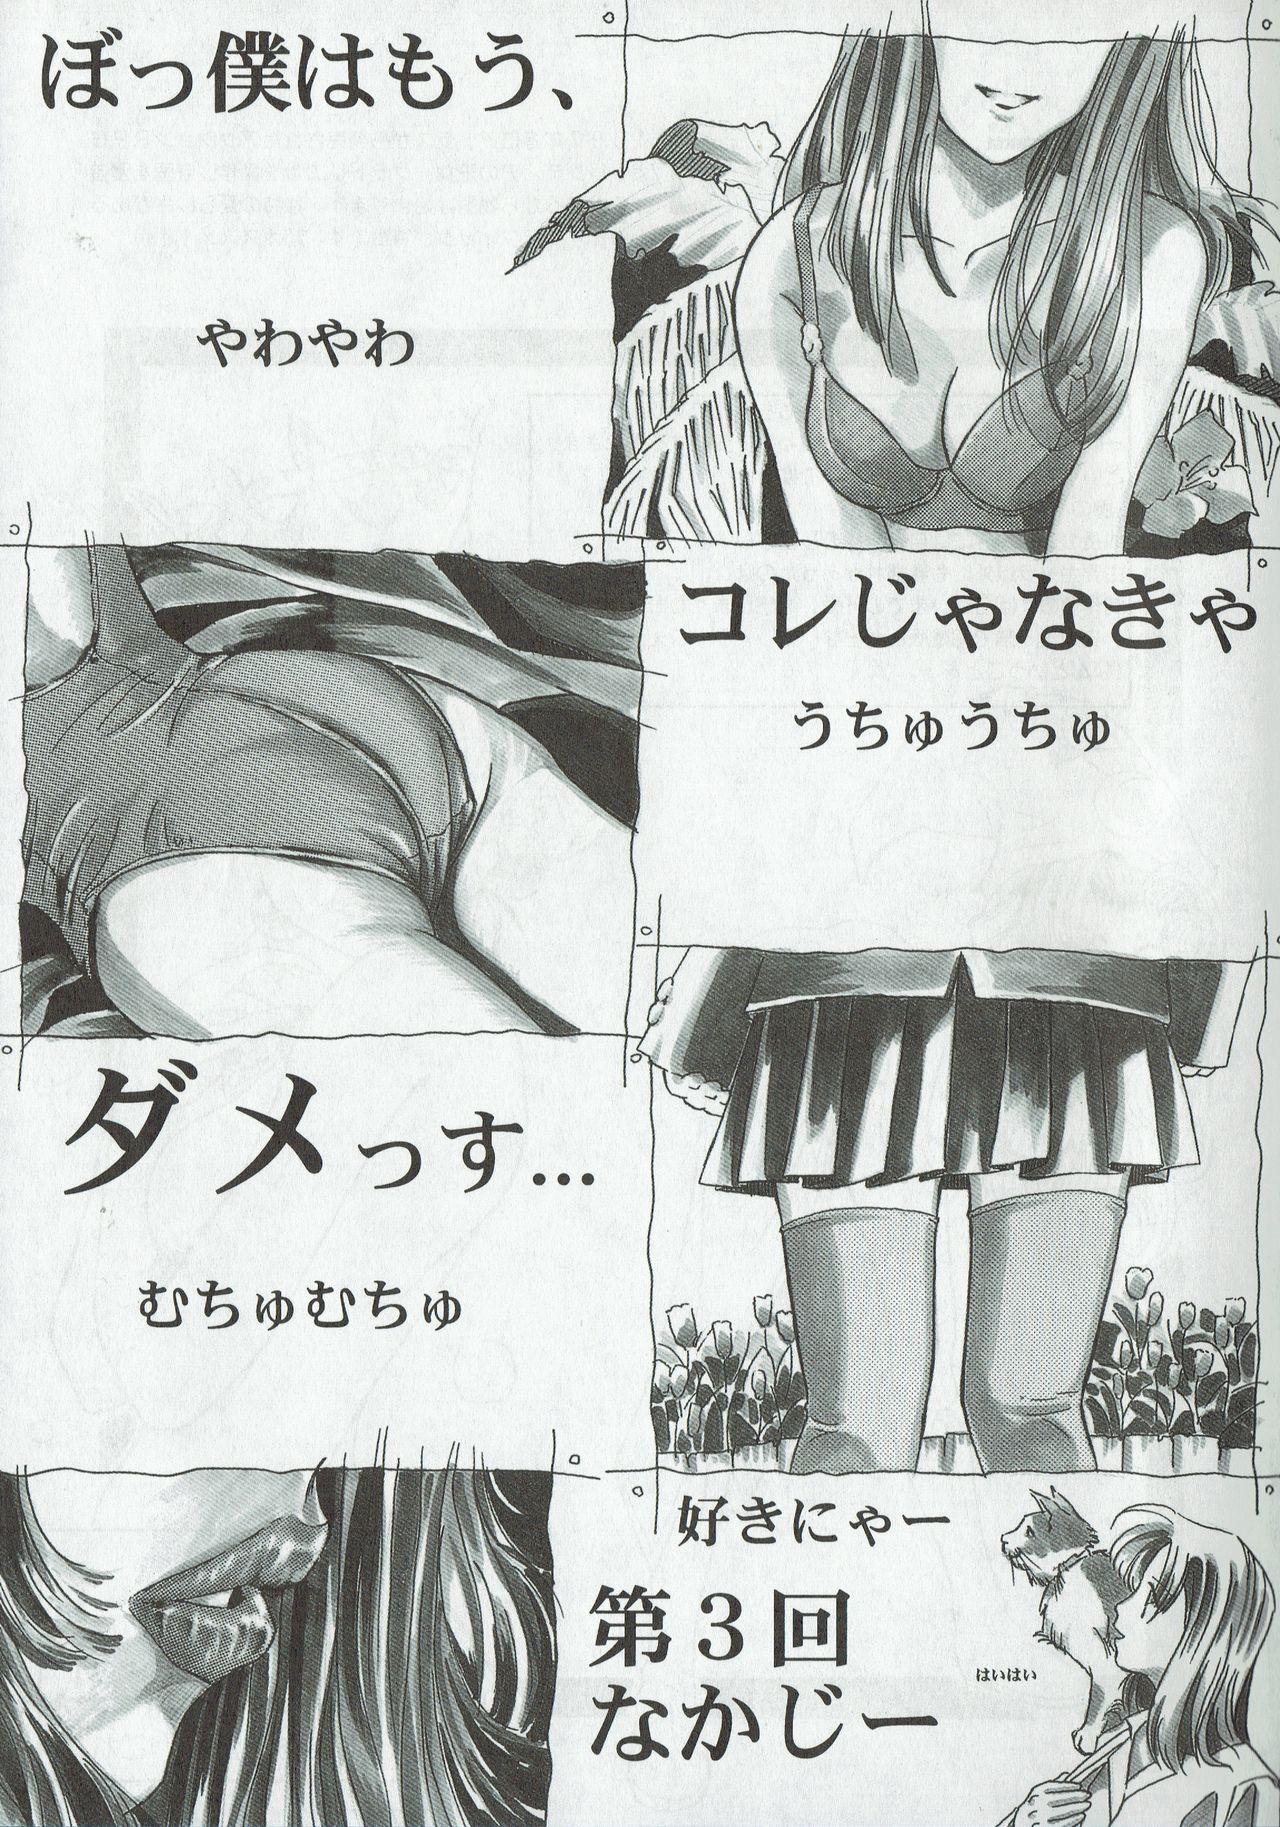 Arisu no Denchi Bakudan Vol. 03 21